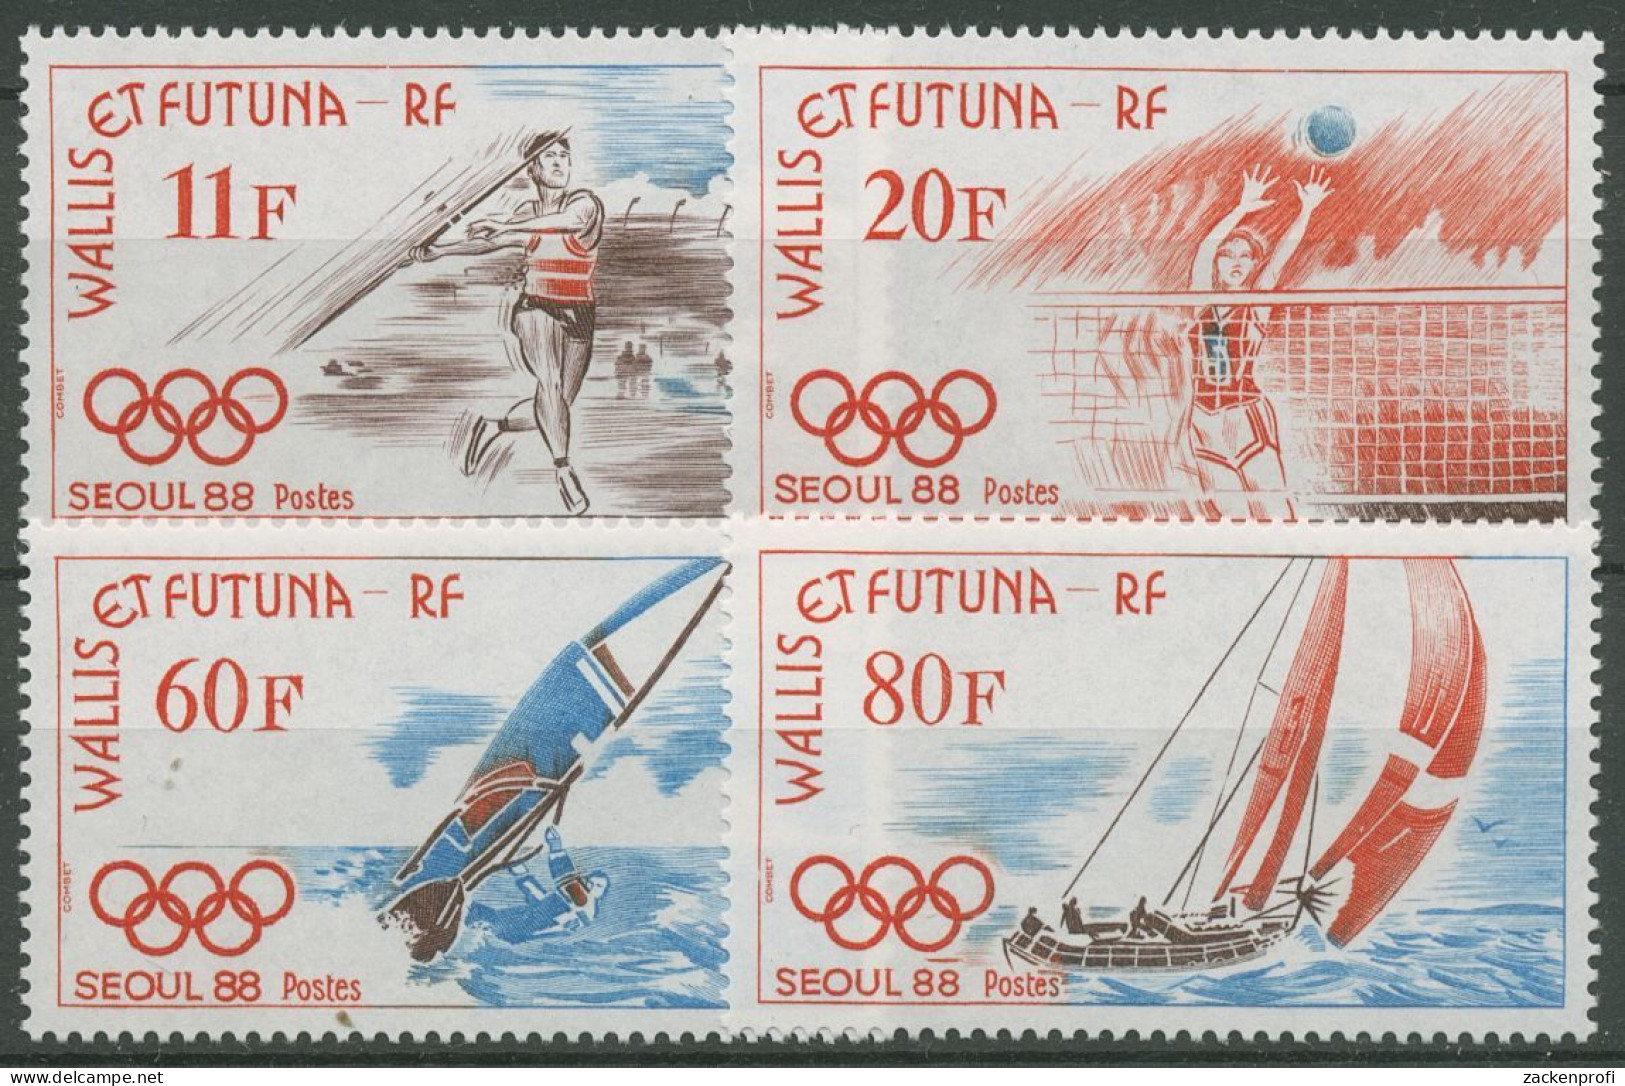 Wallis Und Futuna 1988 Olympische Spiele Seoul 555/58 Postfrisch - Unused Stamps